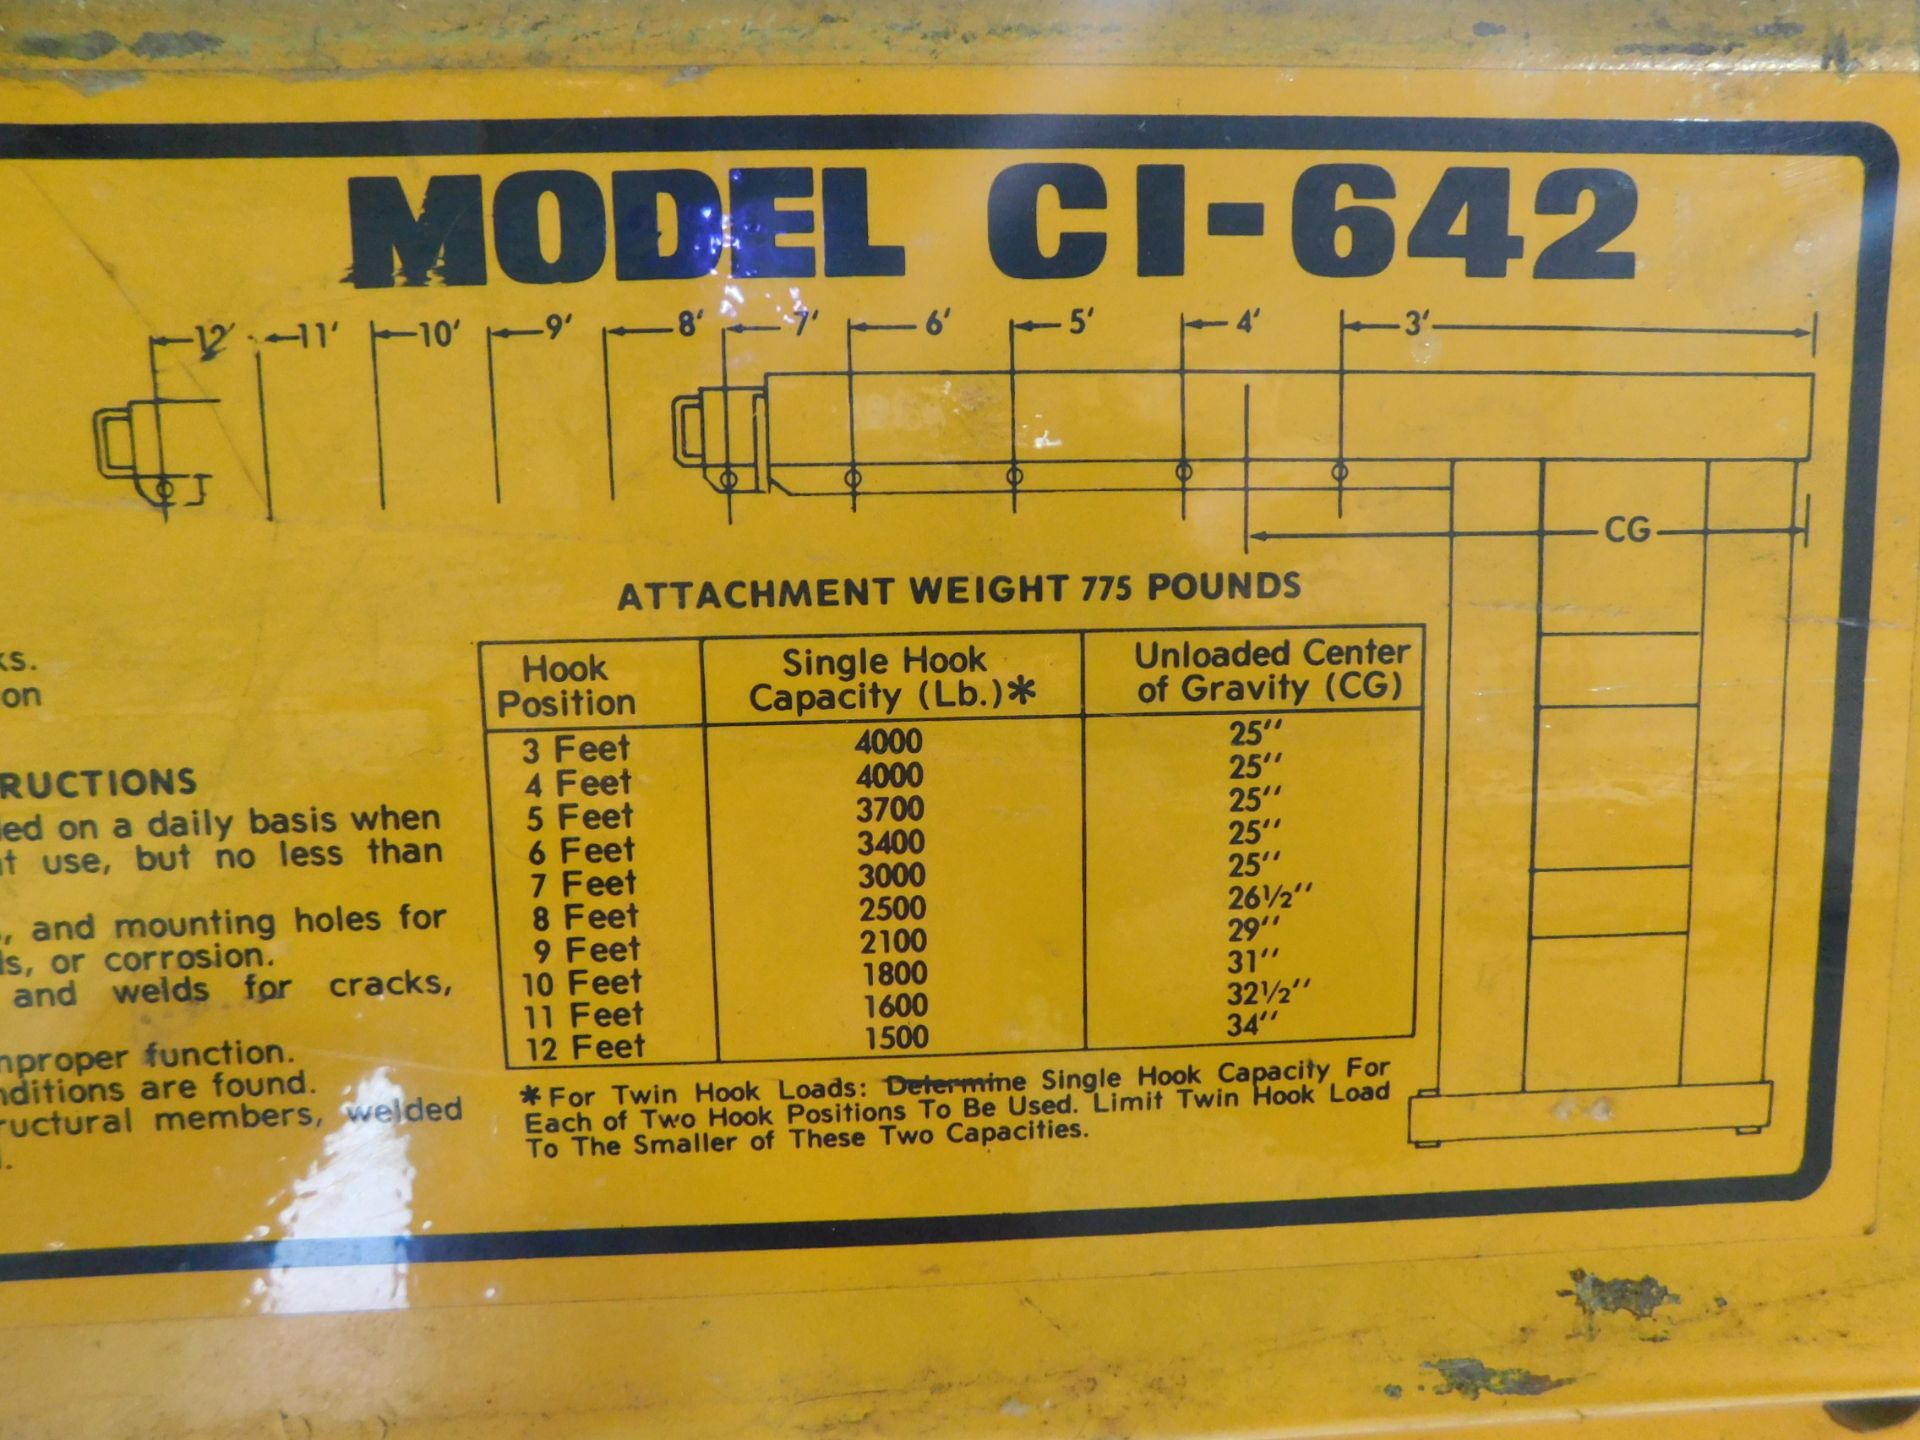 Hercules Model C1-642 Forklift Boom, Extendable Boom Arm, 4,000 lb. Cap. at 3', 1,500 lb. Cap at - Image 7 of 9